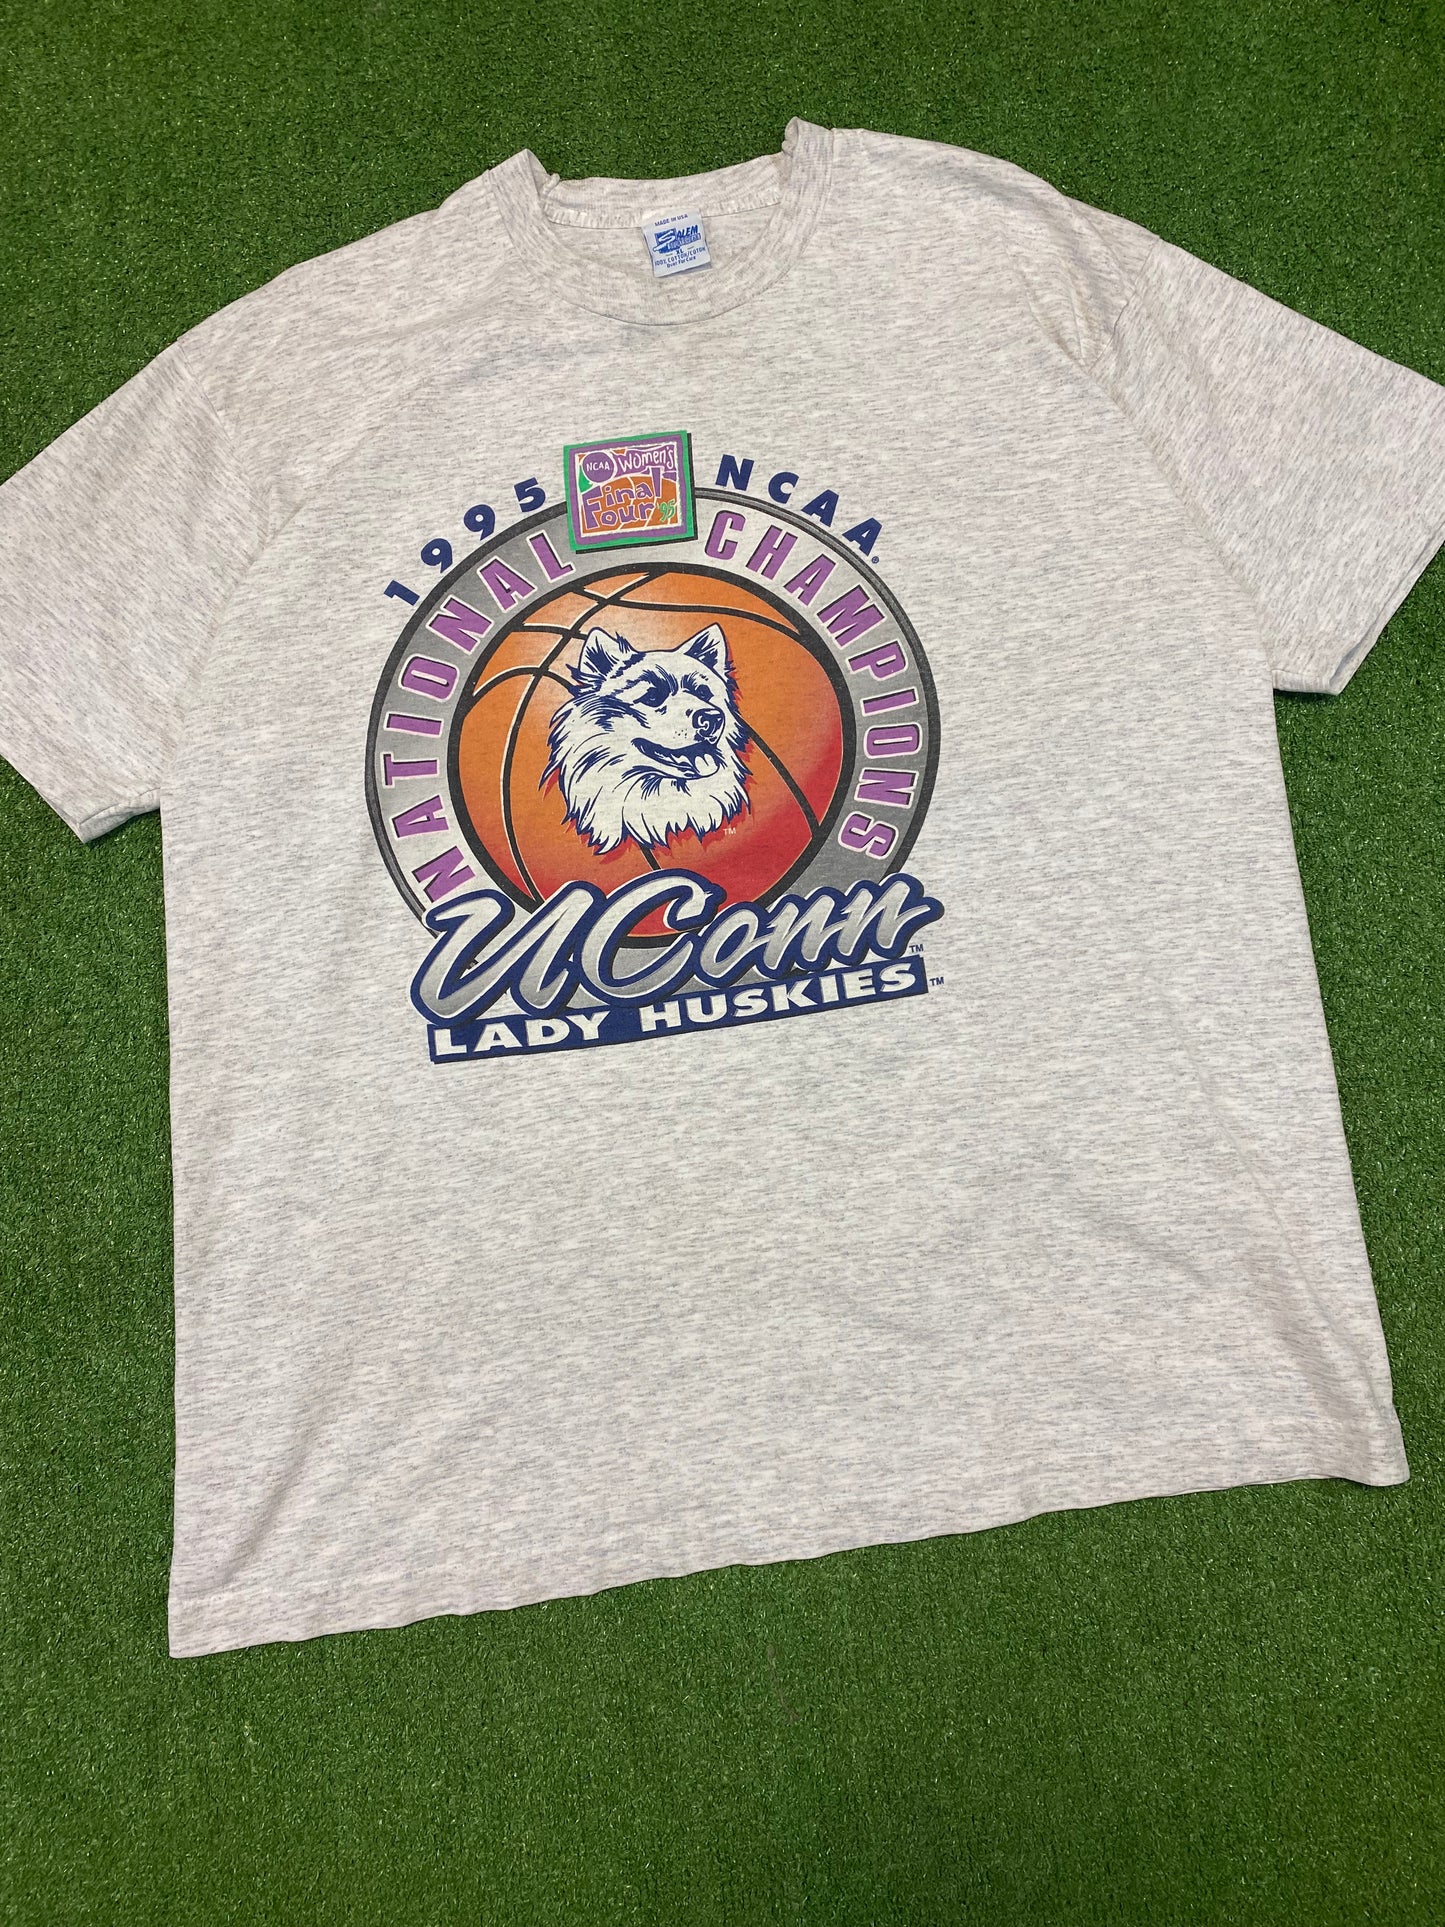 1995 National Champs UConn Women’s Basketball T-Shirt